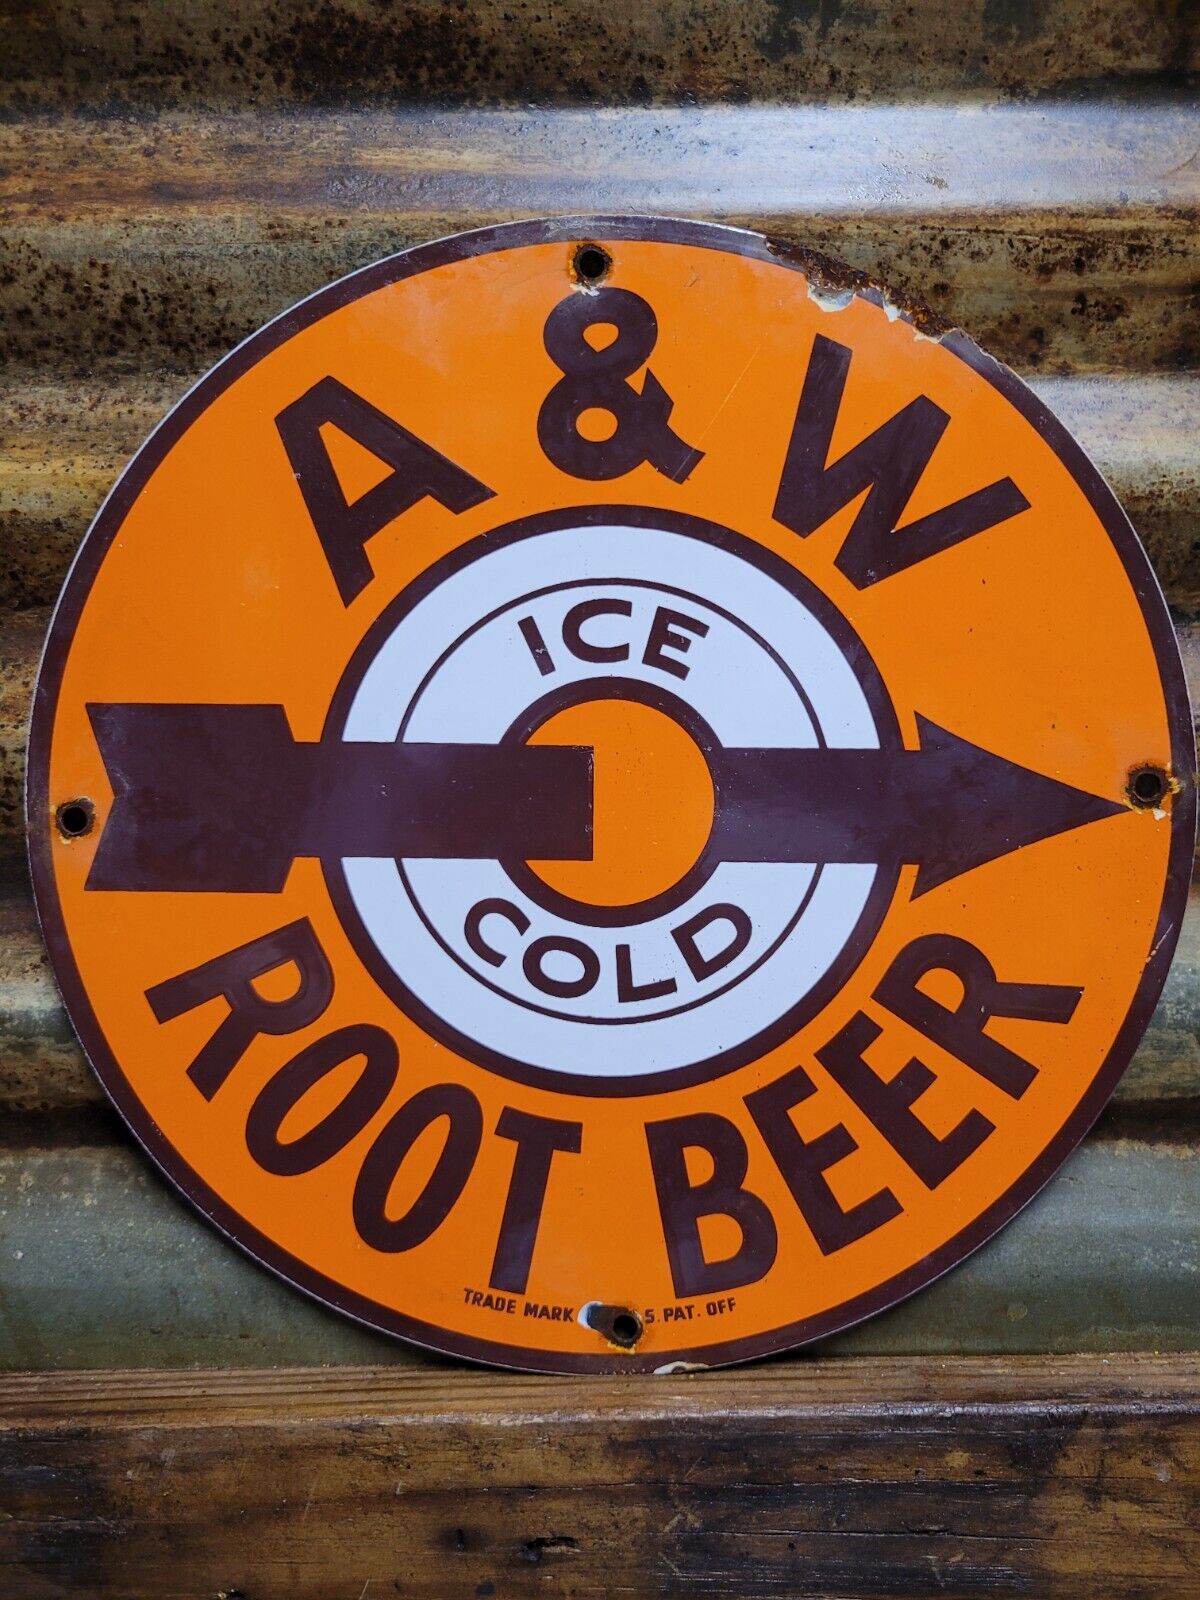 VINTAGE A&W ROOT BEER PORCELAIN SIGN ICE COLD SODA SOFT DRINK SERVED HERE DINER